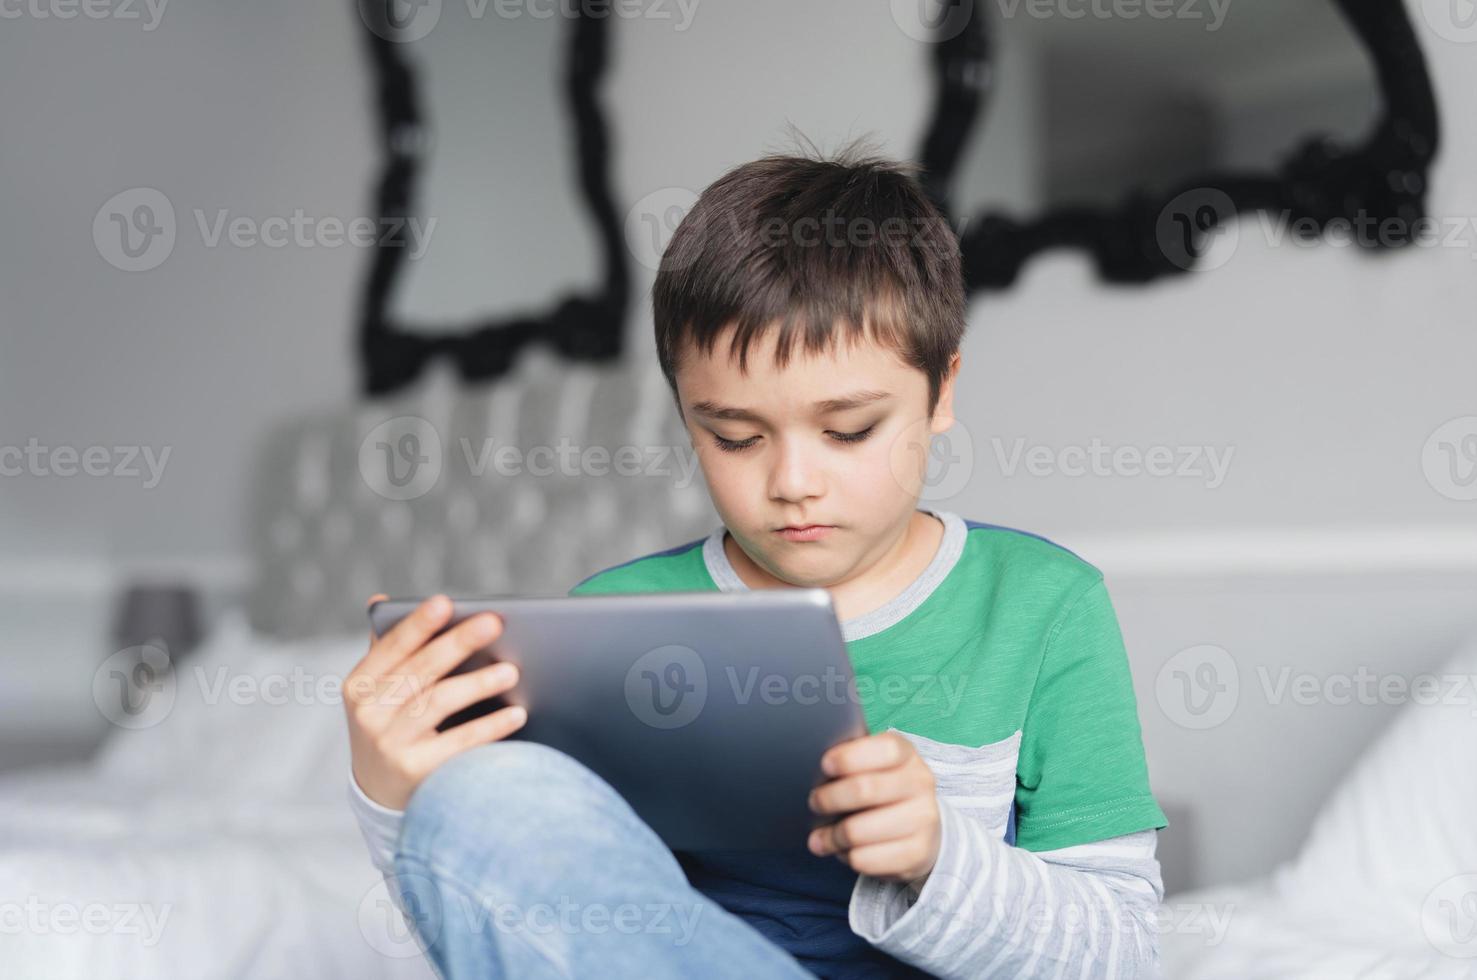 menino usando tablet jogando jogo na internet com um amigo, criança que estuda em casa fazendo lição de casa on-line pelo teclado digital em casa, criança sentada na cama relaxando, assistindo desenhos animados ou conversando online com um amigo foto